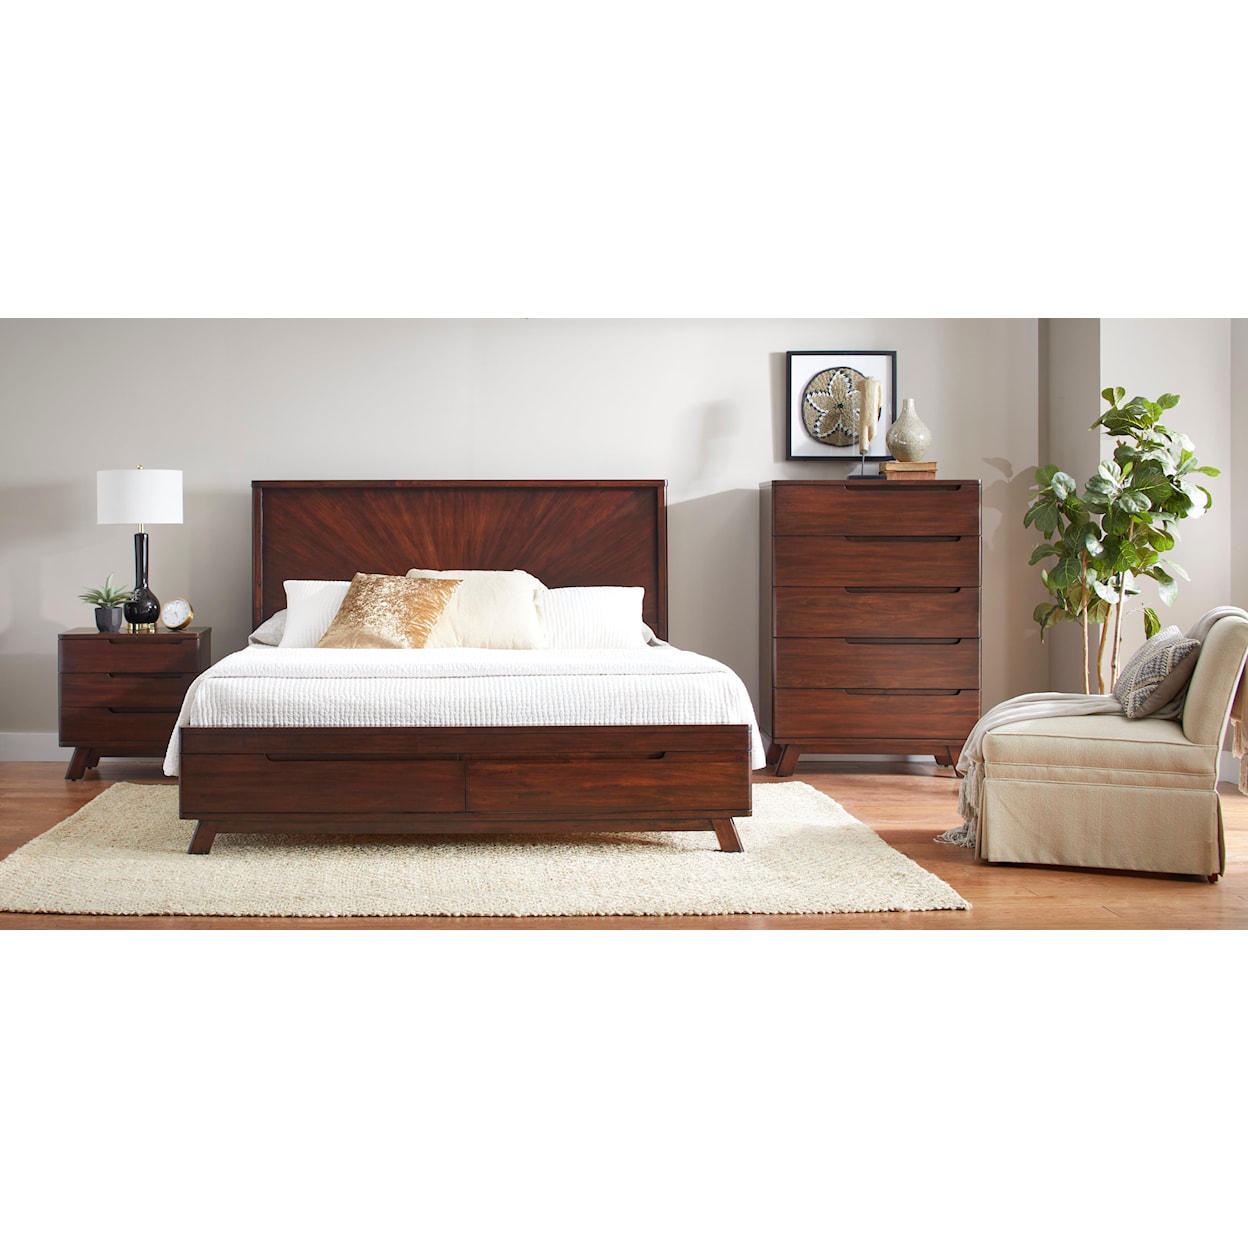 Napa Furniture Design Sahara King Storage Bed Frame